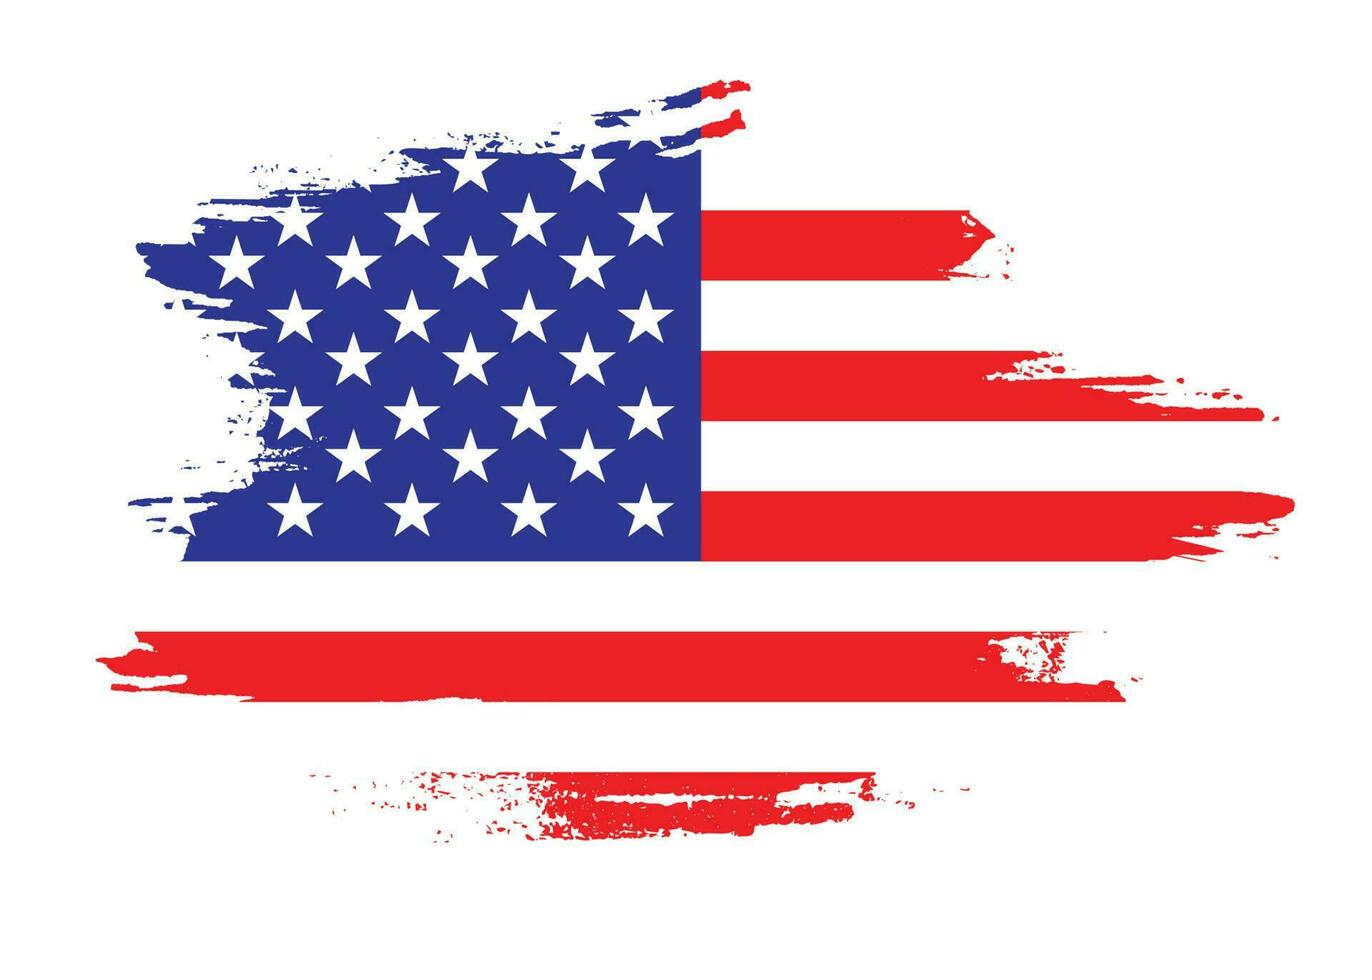 verf borstel beroerte Verenigde Staten van Amerika vlag vector voor vrij downloaden